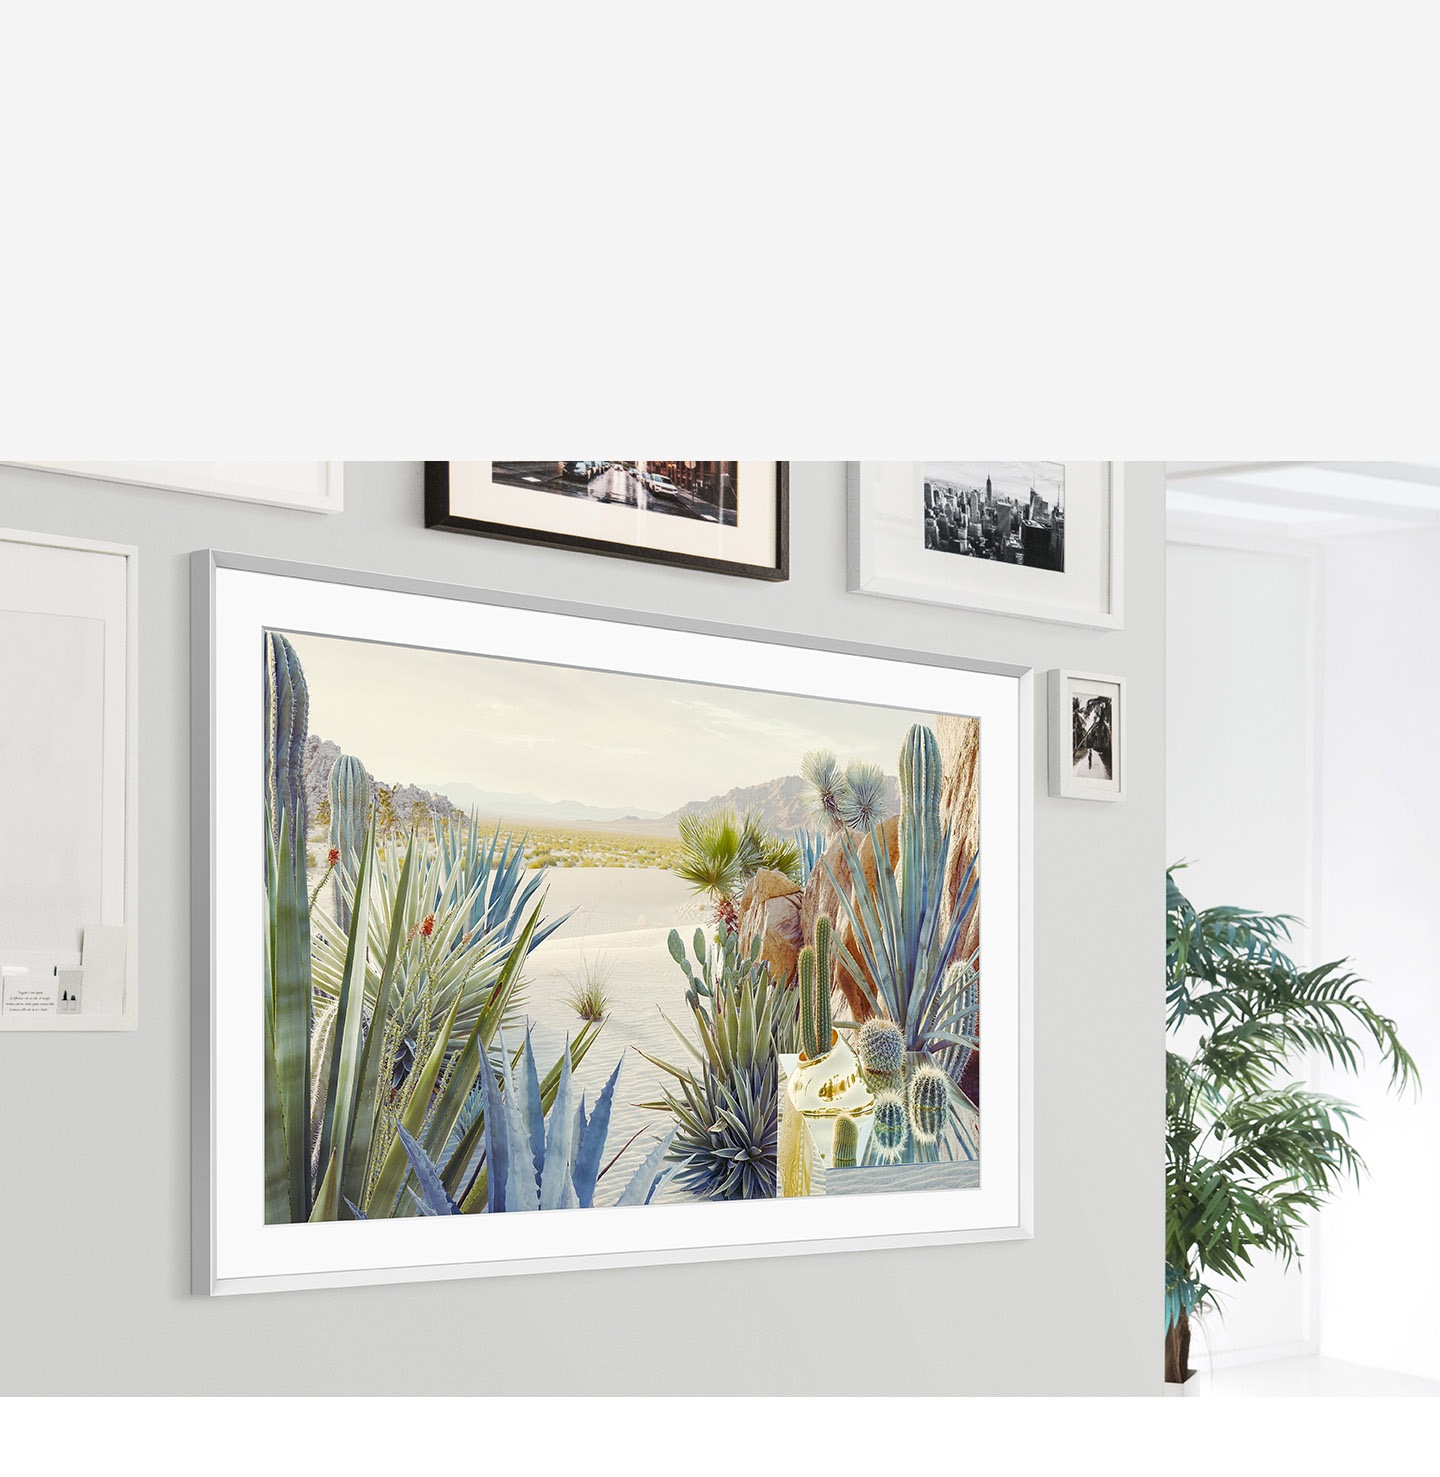 The Frame được gắn trên tường của nội thất gia đình và thiết kế khung hiện đại của nó hòa hợp với các khung tranh khác trên tường.